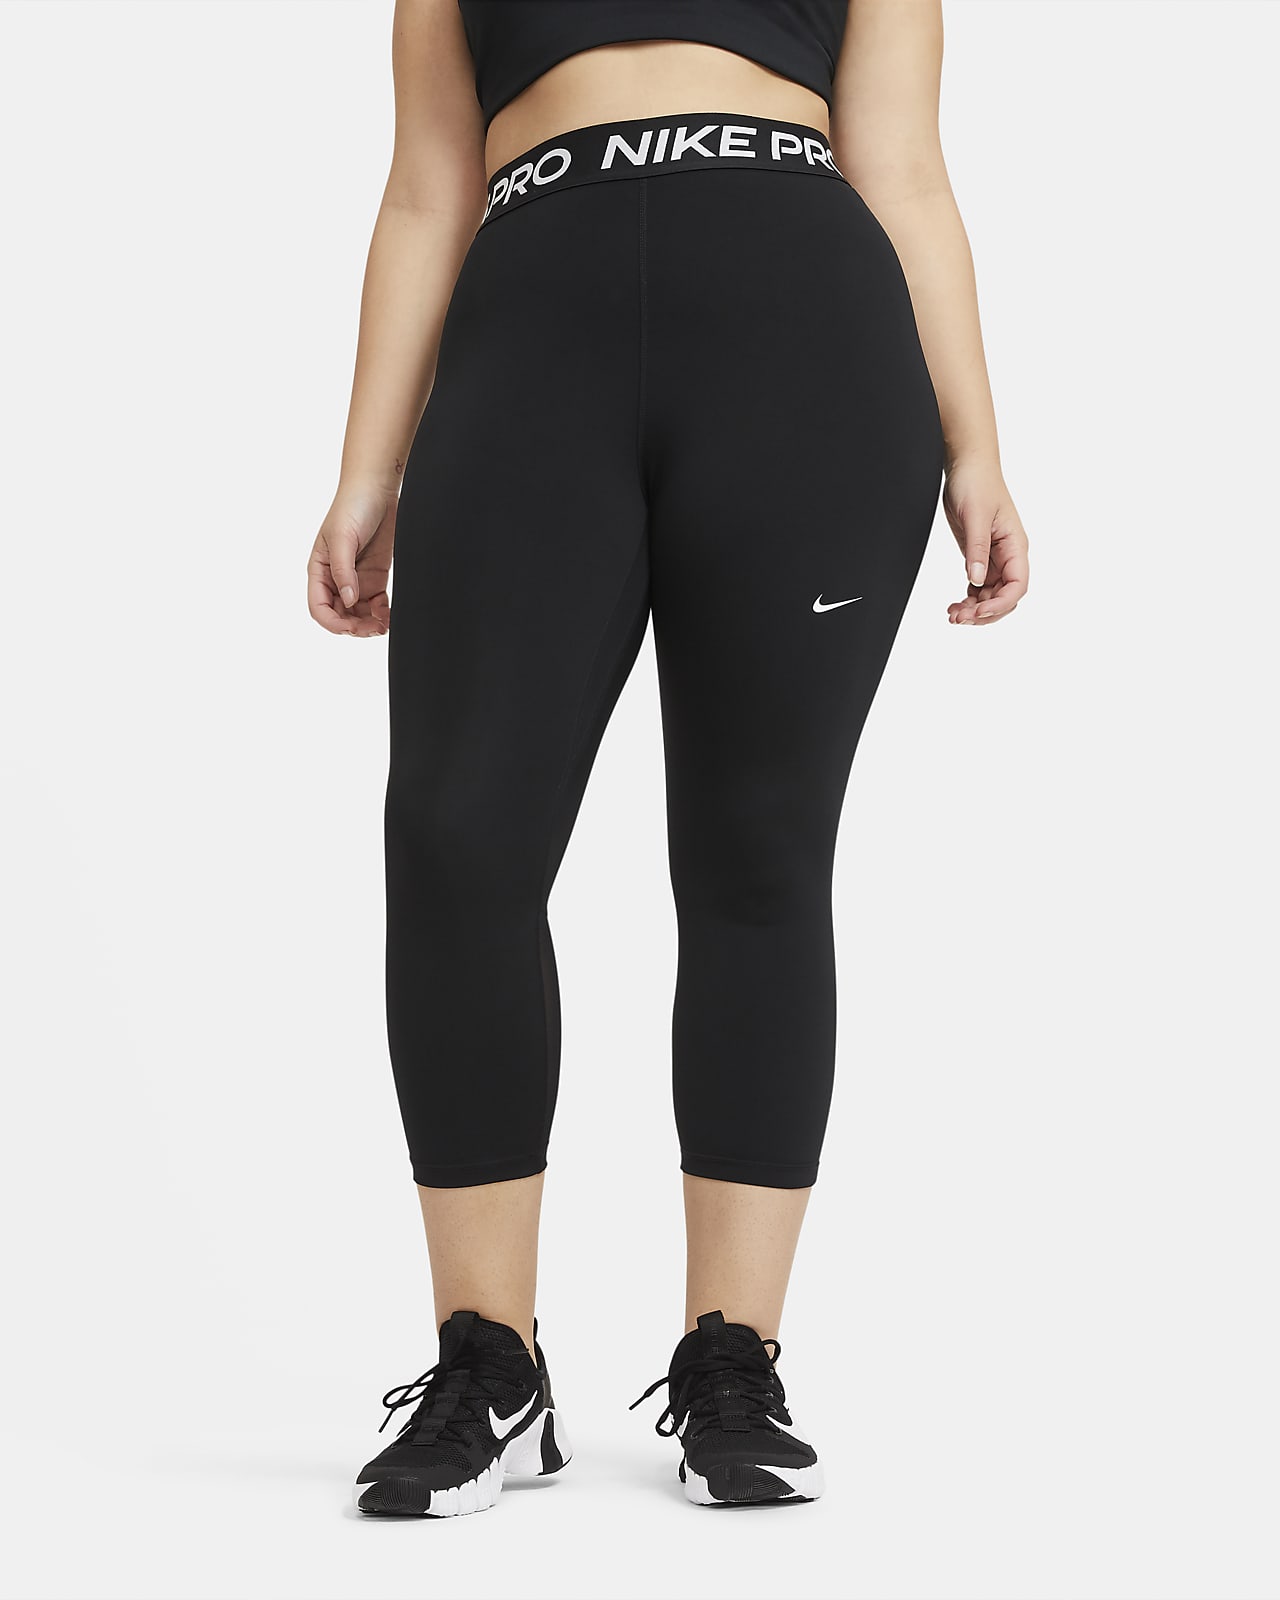 Ankellange Nike Pro-leggings med mellemhøj talje til kvinder (plus size)